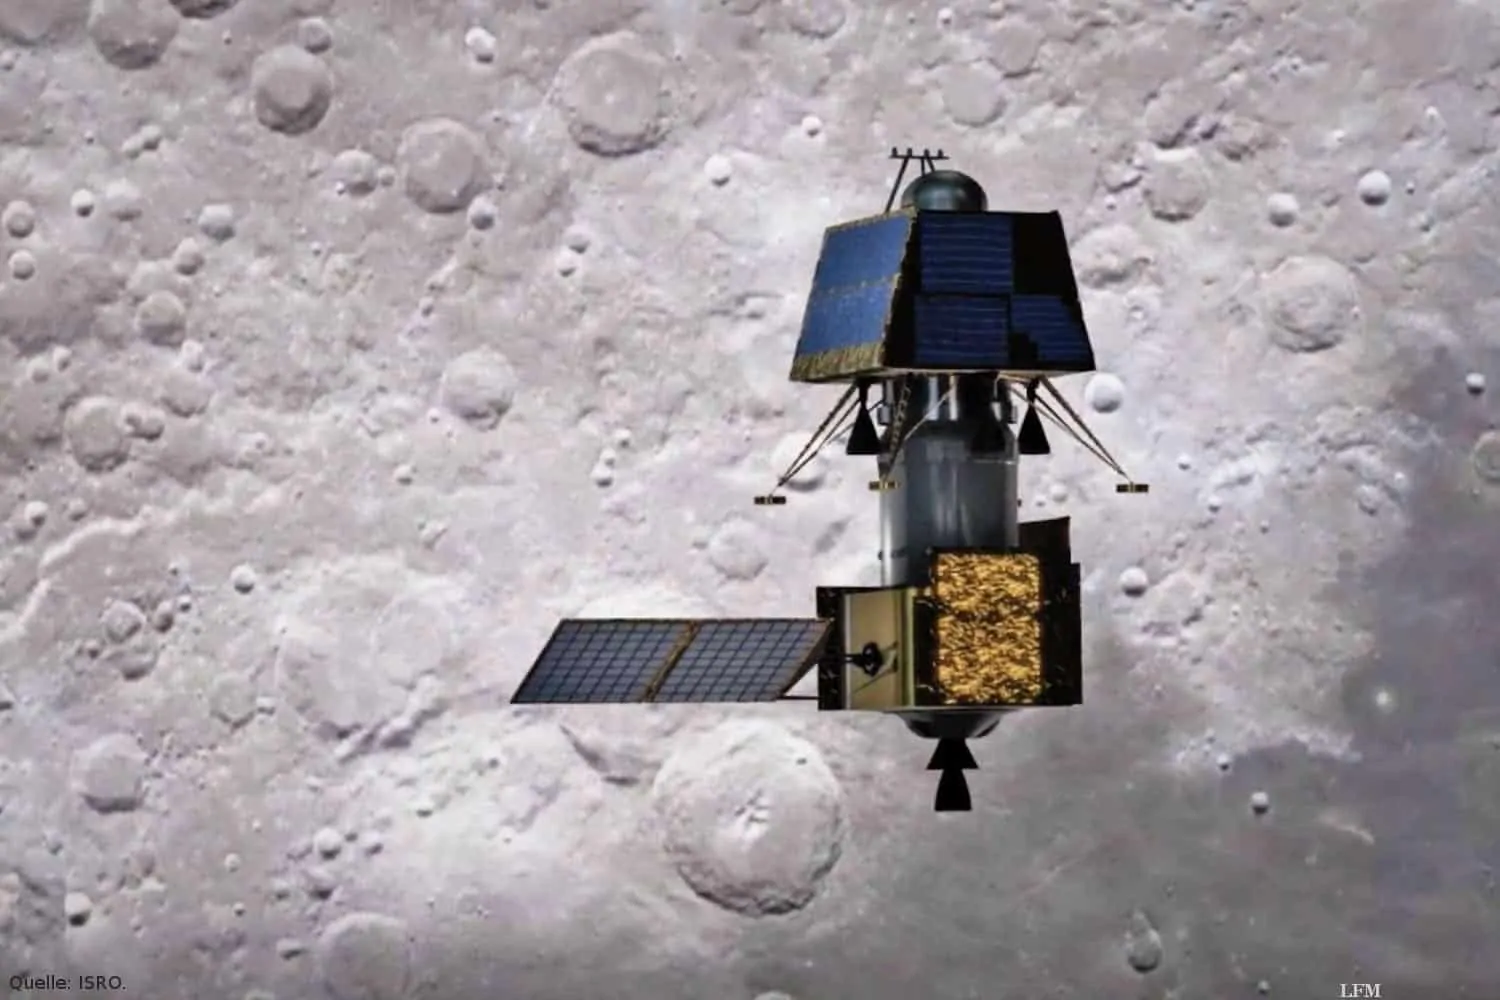 Indischer Mondorbiter Chandrayaan-2 und Mondlandemodul Vikram: Nach dem Start der zweiten indischen Mondmission, Chandrayaan-2, am 22. Juli 2019 vom indischen Weltraumbahnhof Sriharikota erreichte die Sonde am 20. August die Mondumlaufbahn. Am 2. September wurde die Landesonde Vikram (in der künstlerischen Darstellung der obere Teil des Raumsonden-Gespanns) von Chandrayaan-2 abgetrennt und absolvierte erfolgreich zwei Steuermanöver, die das Modul in einen elliptischen Orbit von 101 Kilometern mal 35 Kilometern über der Mondoberfläche lenkten. Die Landung von Vikram in der Nähe des lunaren Südpols ist für den Abend des 06. September 2019 (MESZ) vorgesehen.